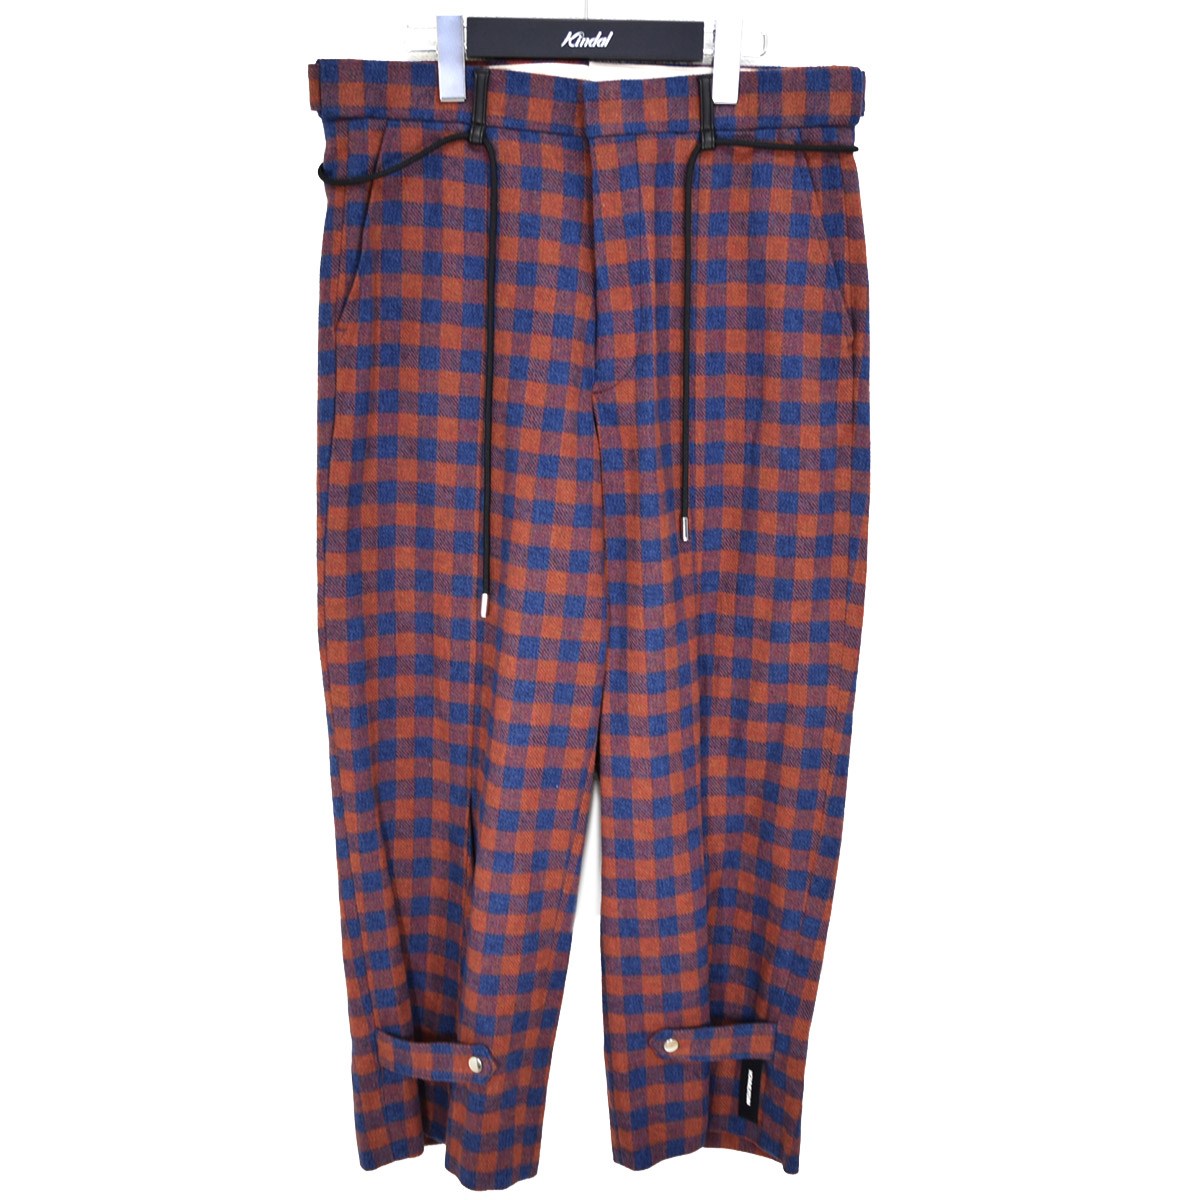 Adjustment Pajama pants チェックパジャマパンツ 2020AW